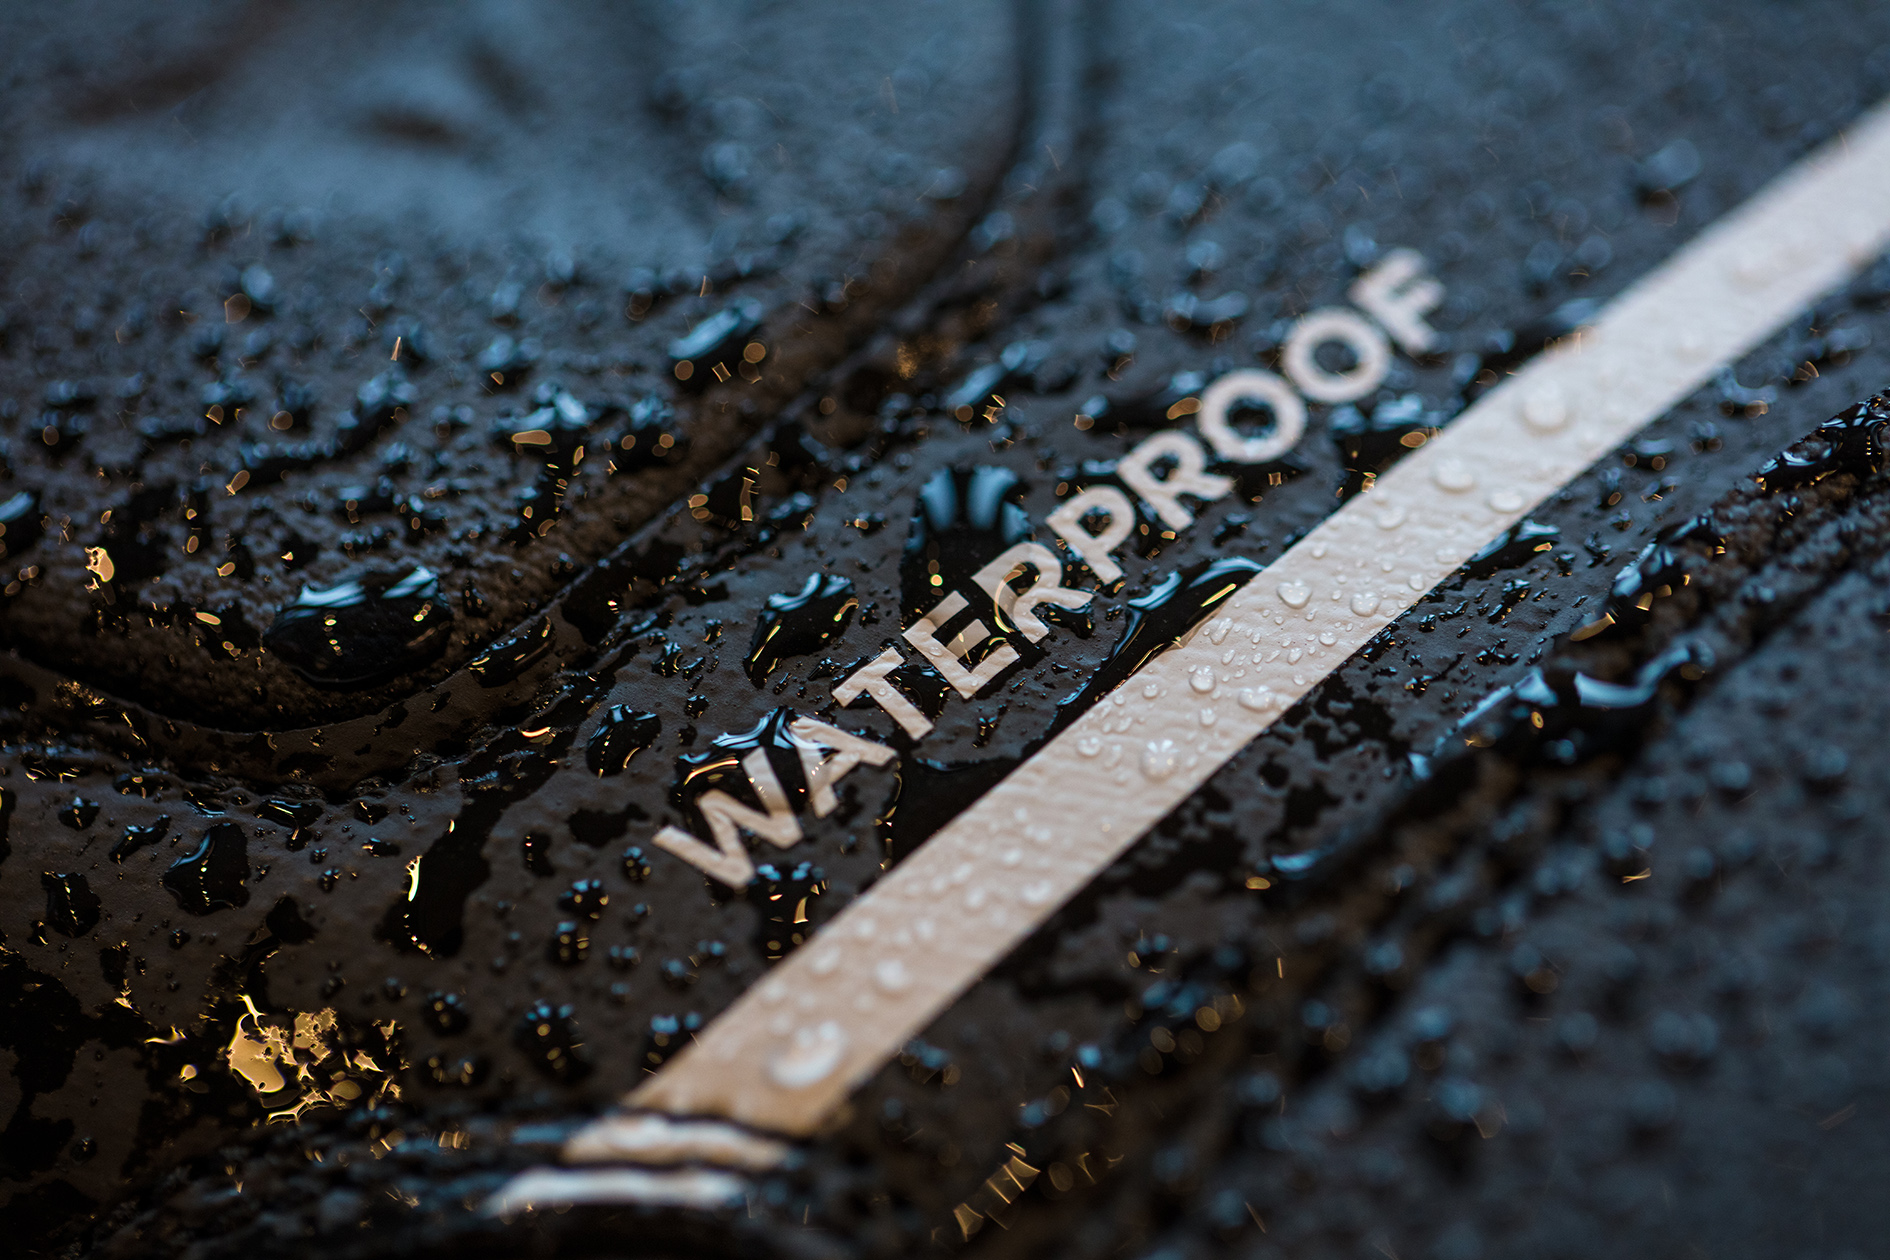 waterproof